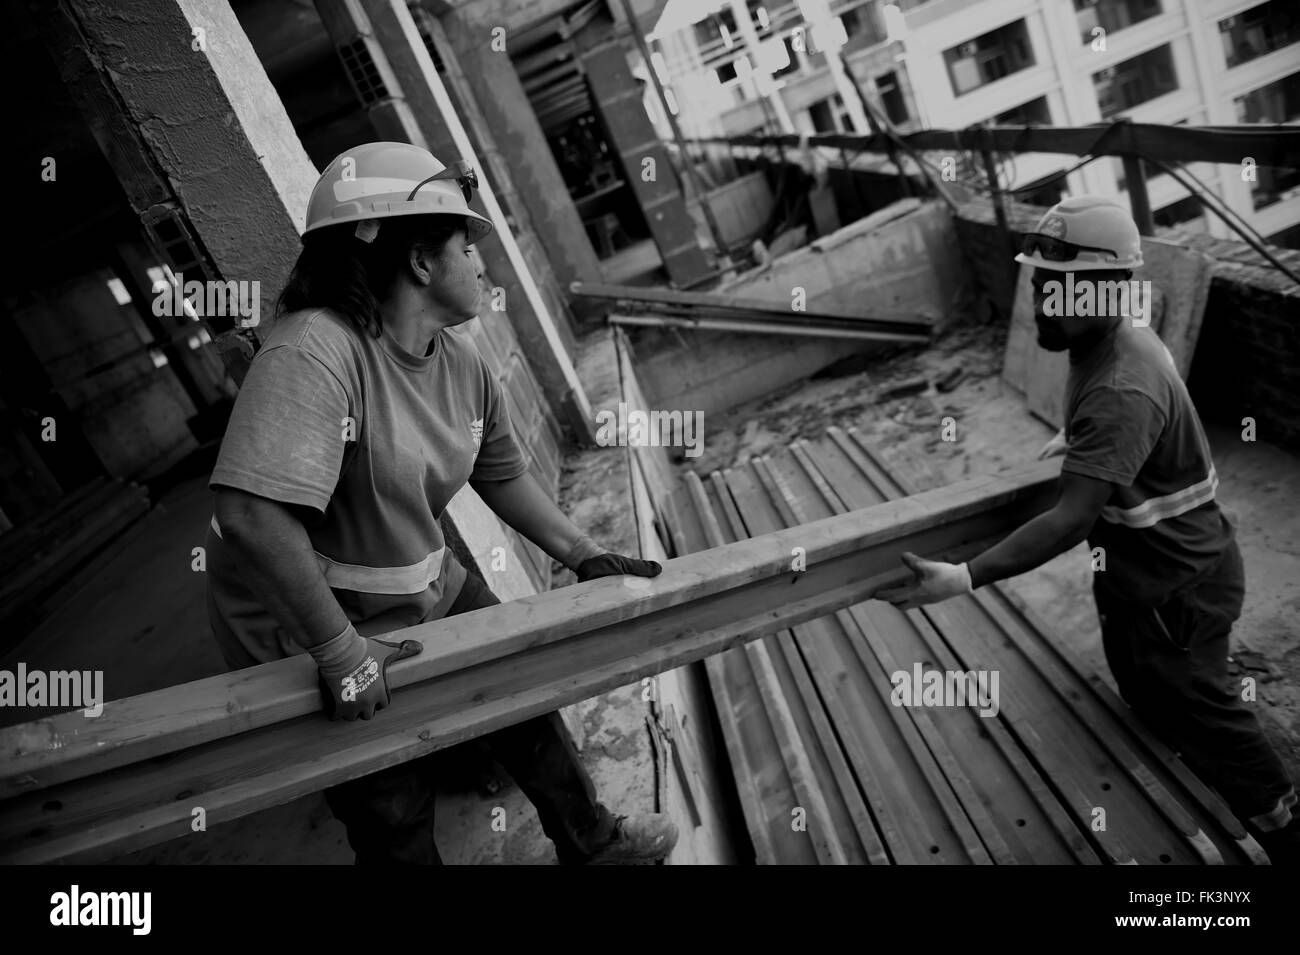 (160307) -- Montevideo, 7 marzo 2016 (Xinhua) -- Claudia Barreto (L) lavora in una fabbrica di Montevideo, capitale dell'Uruguay, il 4 marzo 2016. Claudia, 44 anni, è la madre di 5 figli e lavora come muratore in costruzione dal 2008 per sostenere la sua famiglia. Ella è la donna solo in una fabbrica con una cinquantina di lavoratori e ha lo stesso carico di lavoro con gli altri. Secondo le nuove clausole aggiunto nei documenti della sola Unione Nazionale di costruzione e gli allegati (SUNCA), le imprese sono tenute ad assumere altro personale femminile. La Giornata internazionale della donna si celebra ogni anno il 8 marzo. Il tema Foto Stock